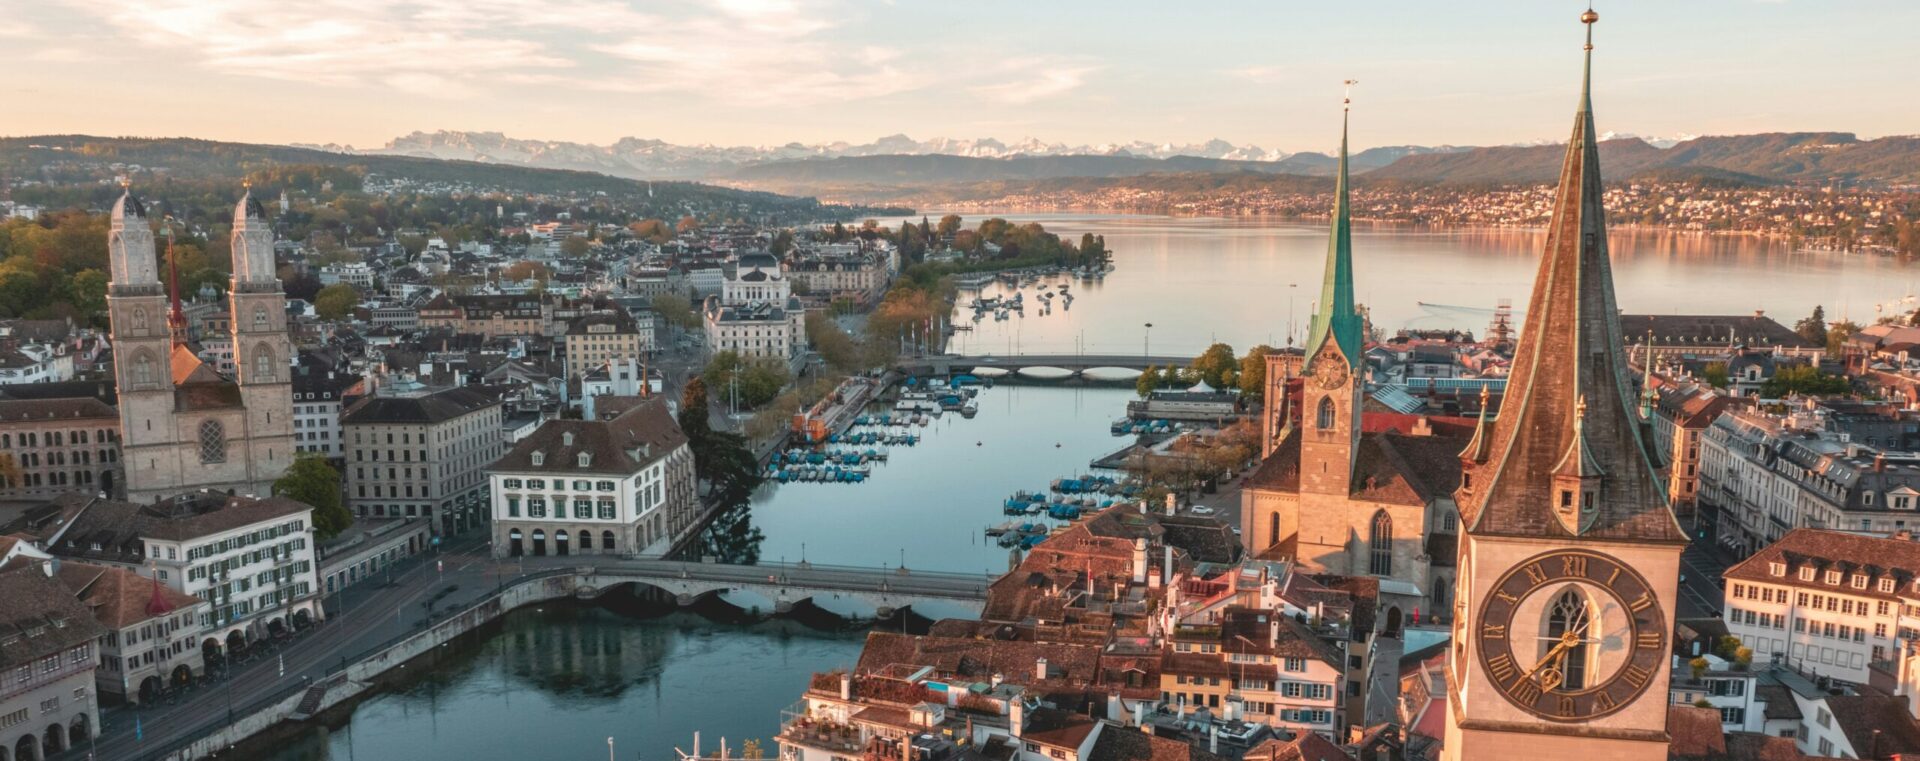 Les Eglises perdent encore des membres dans le canton de Zurich | © Henrique Ferreira/Unsplash